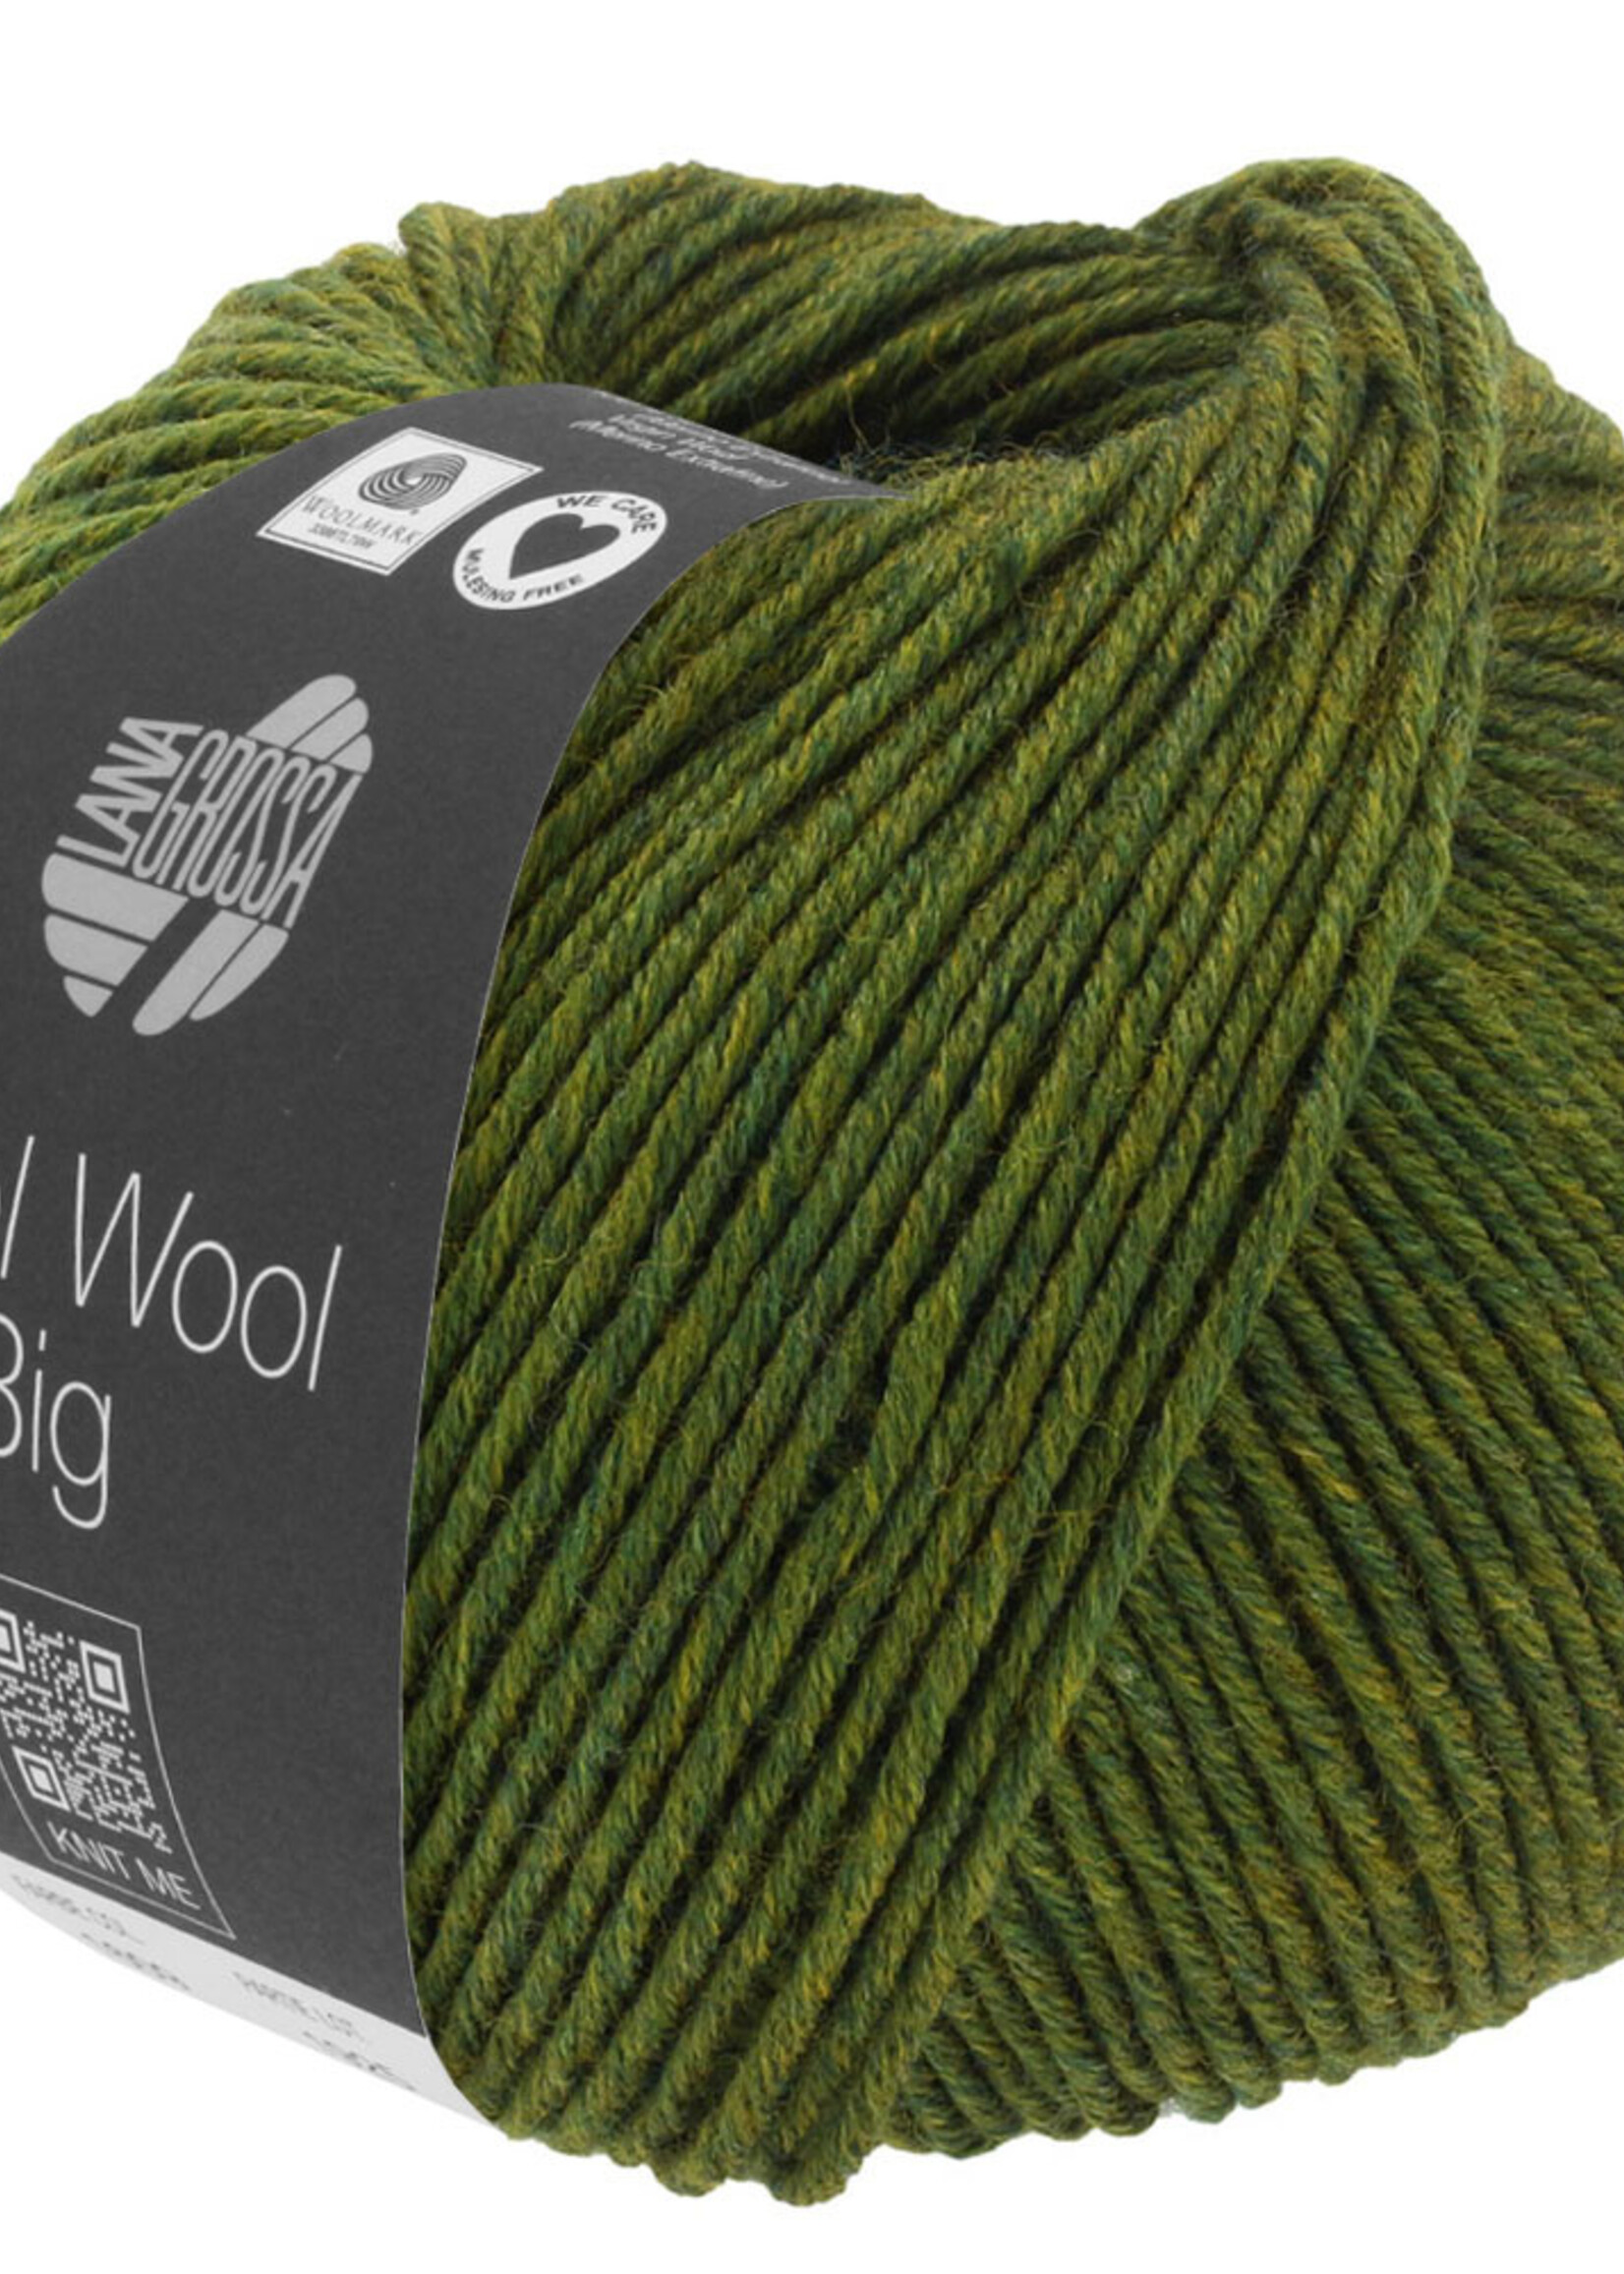 Lana Grossa Cool Wool Big - Lana Grossa 1611-groen gemêleerd